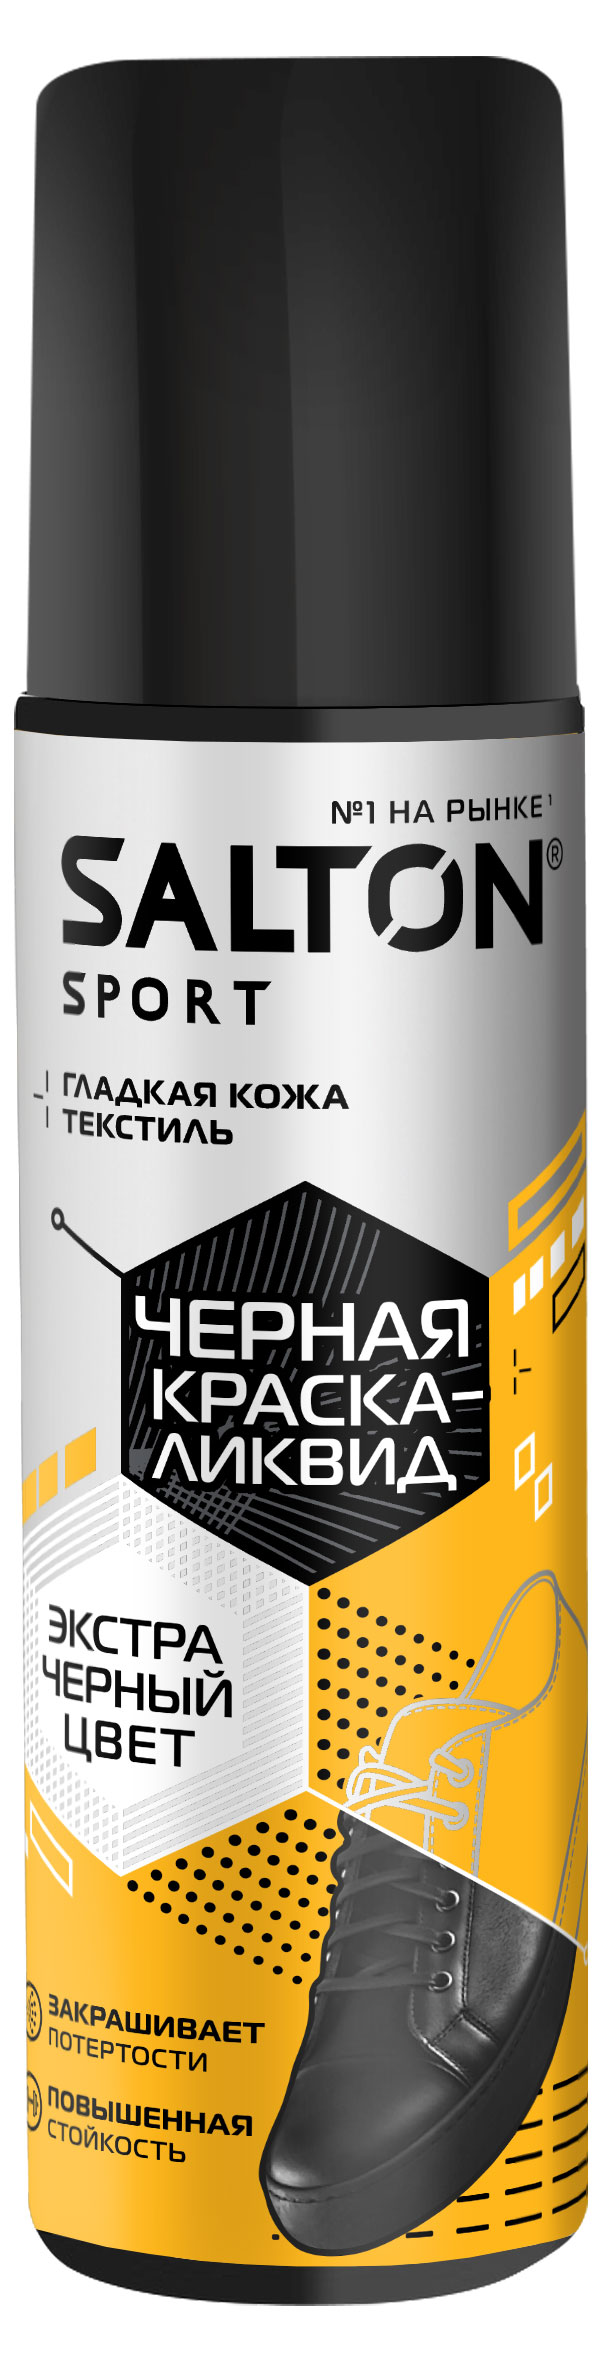 Salton | Краска-ликвид для черной обуви Salton Sport, 75 мл